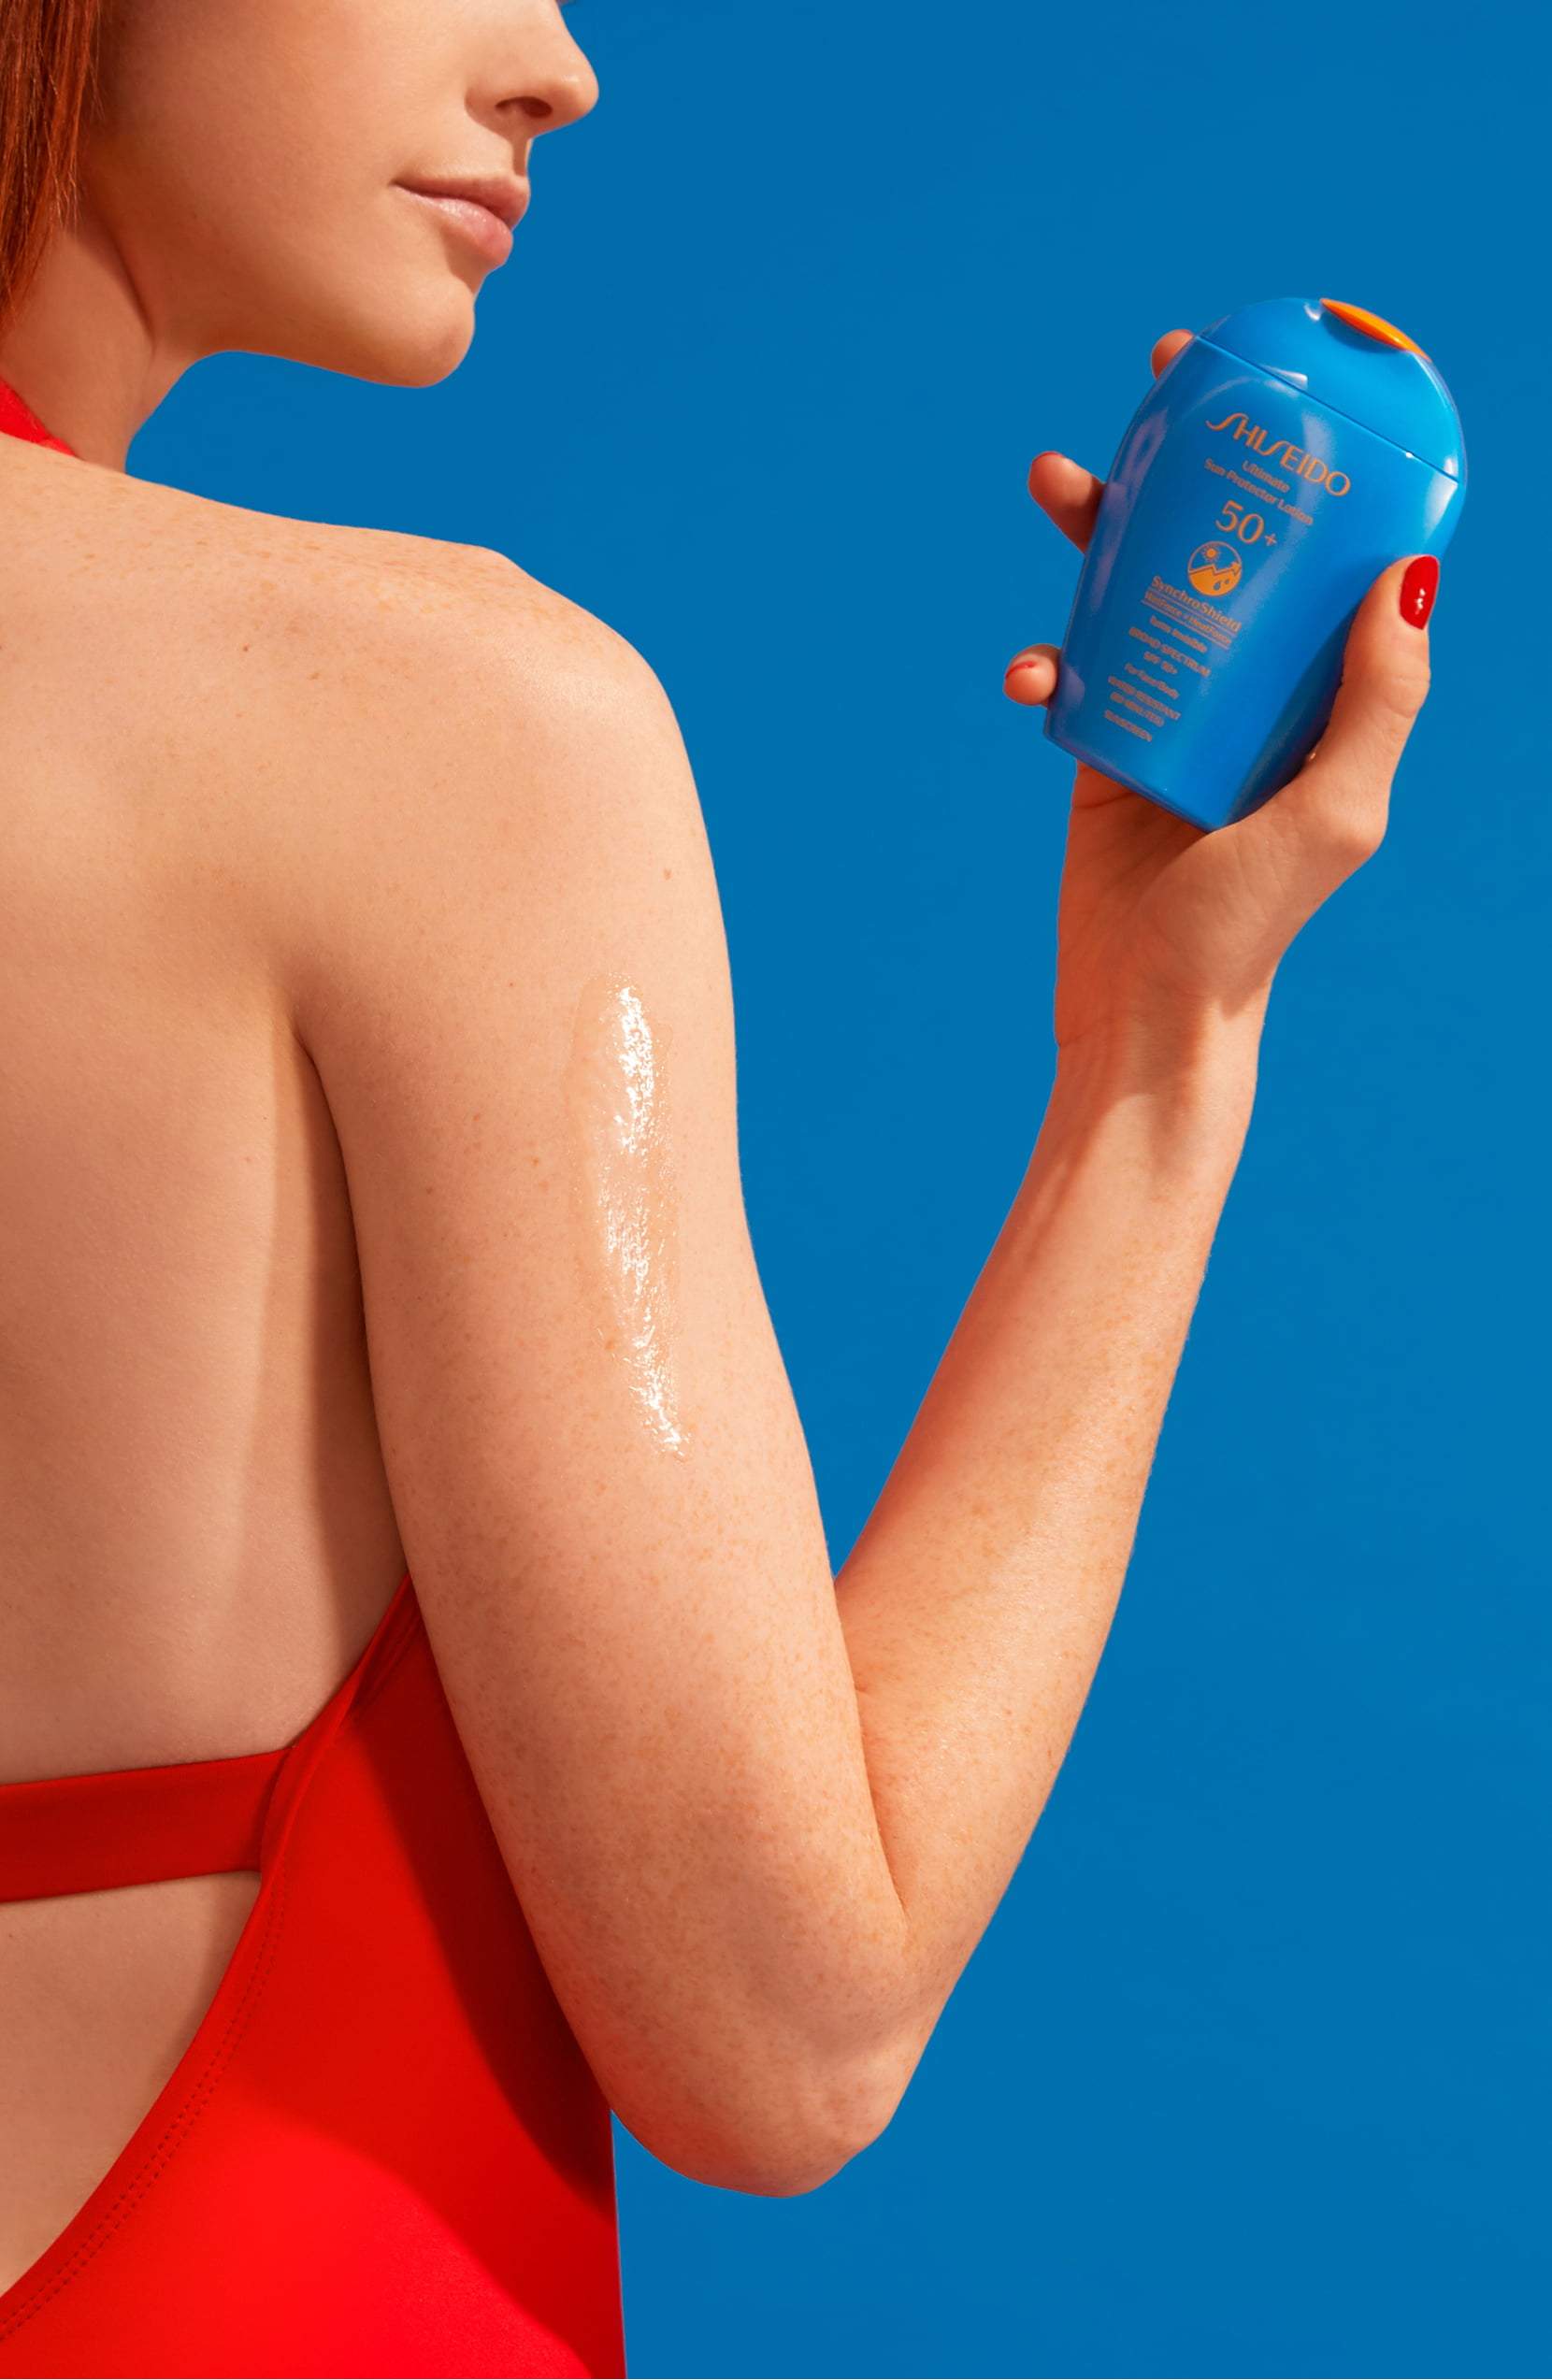 Shiseido 5 oz. Ultimate Sun Protector Lotion SPF 50+ Sunscreen